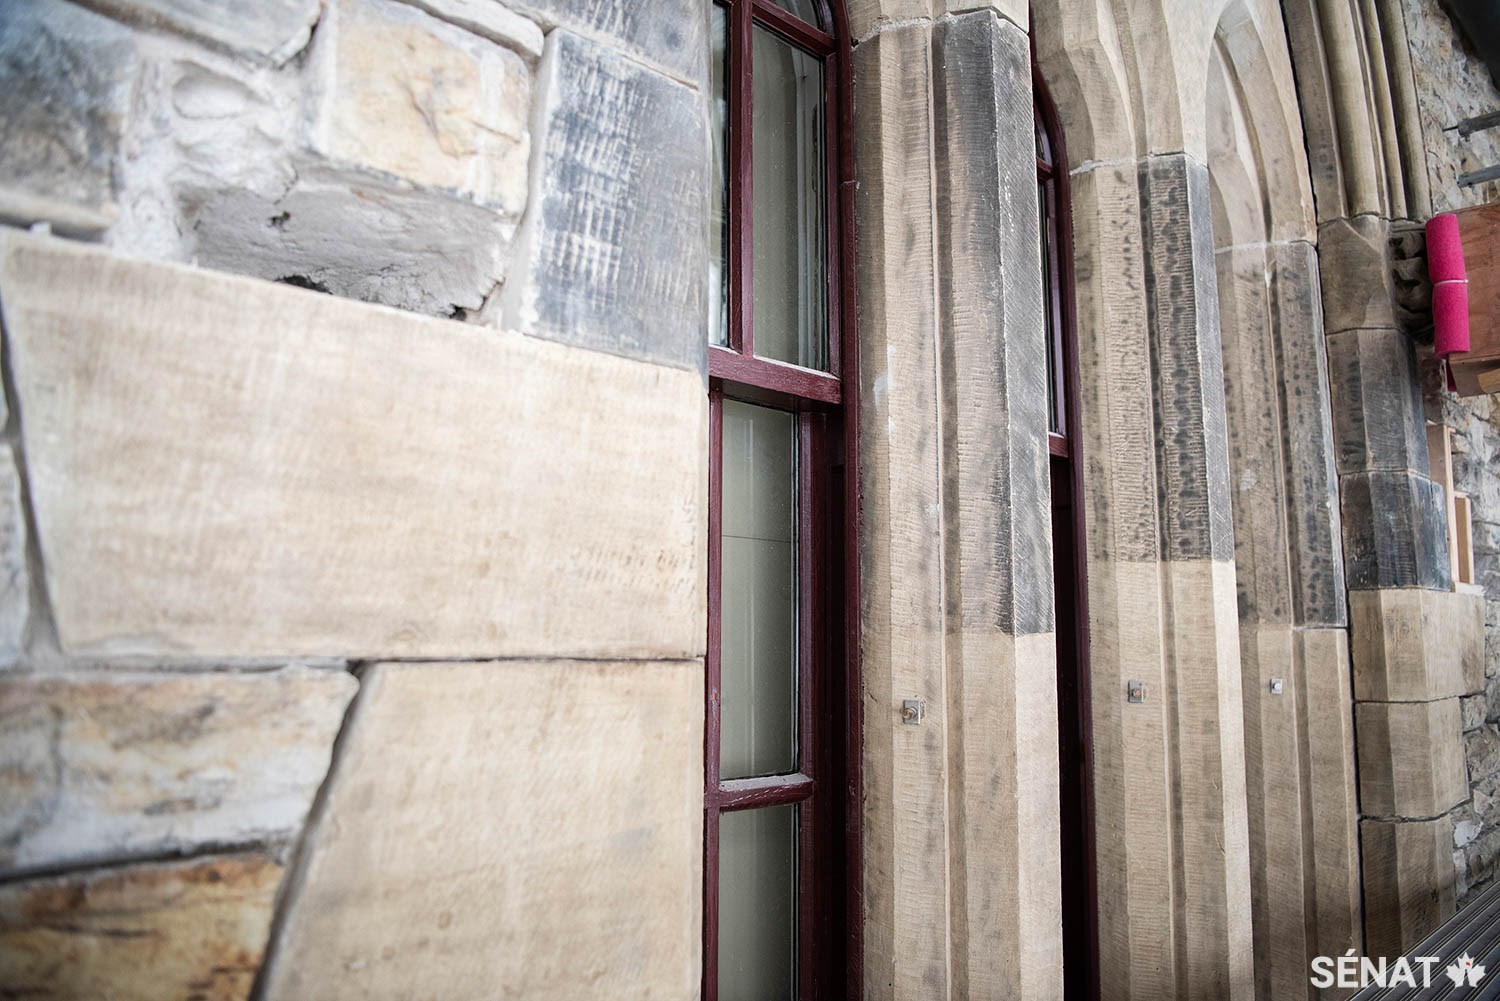 La réhabilitation de la maçonnerie a déjà ravivé les couleurs de certaines parties de l’édifice de l’Est sur la Colline du Parlement, où de nombreux sénateurs ont des bureaux. Les pierres nettoyées se distinguent nettement des pierres ternes.